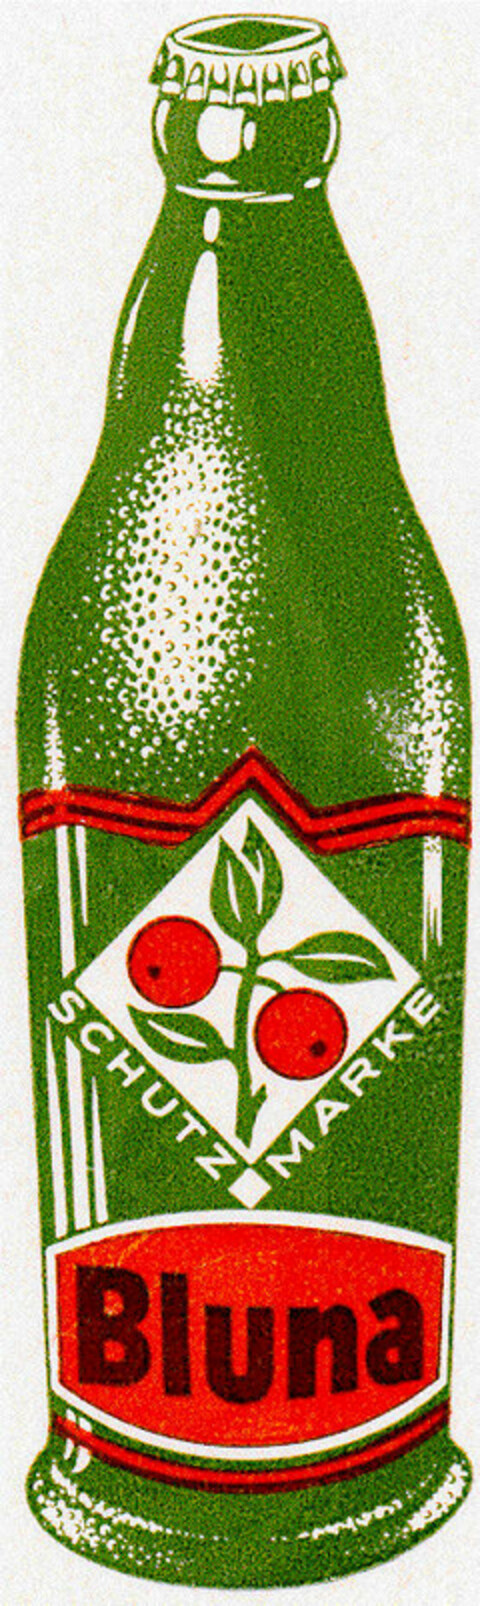 Bluna SCHUTZ MARKE Logo (DPMA, 31.05.1957)